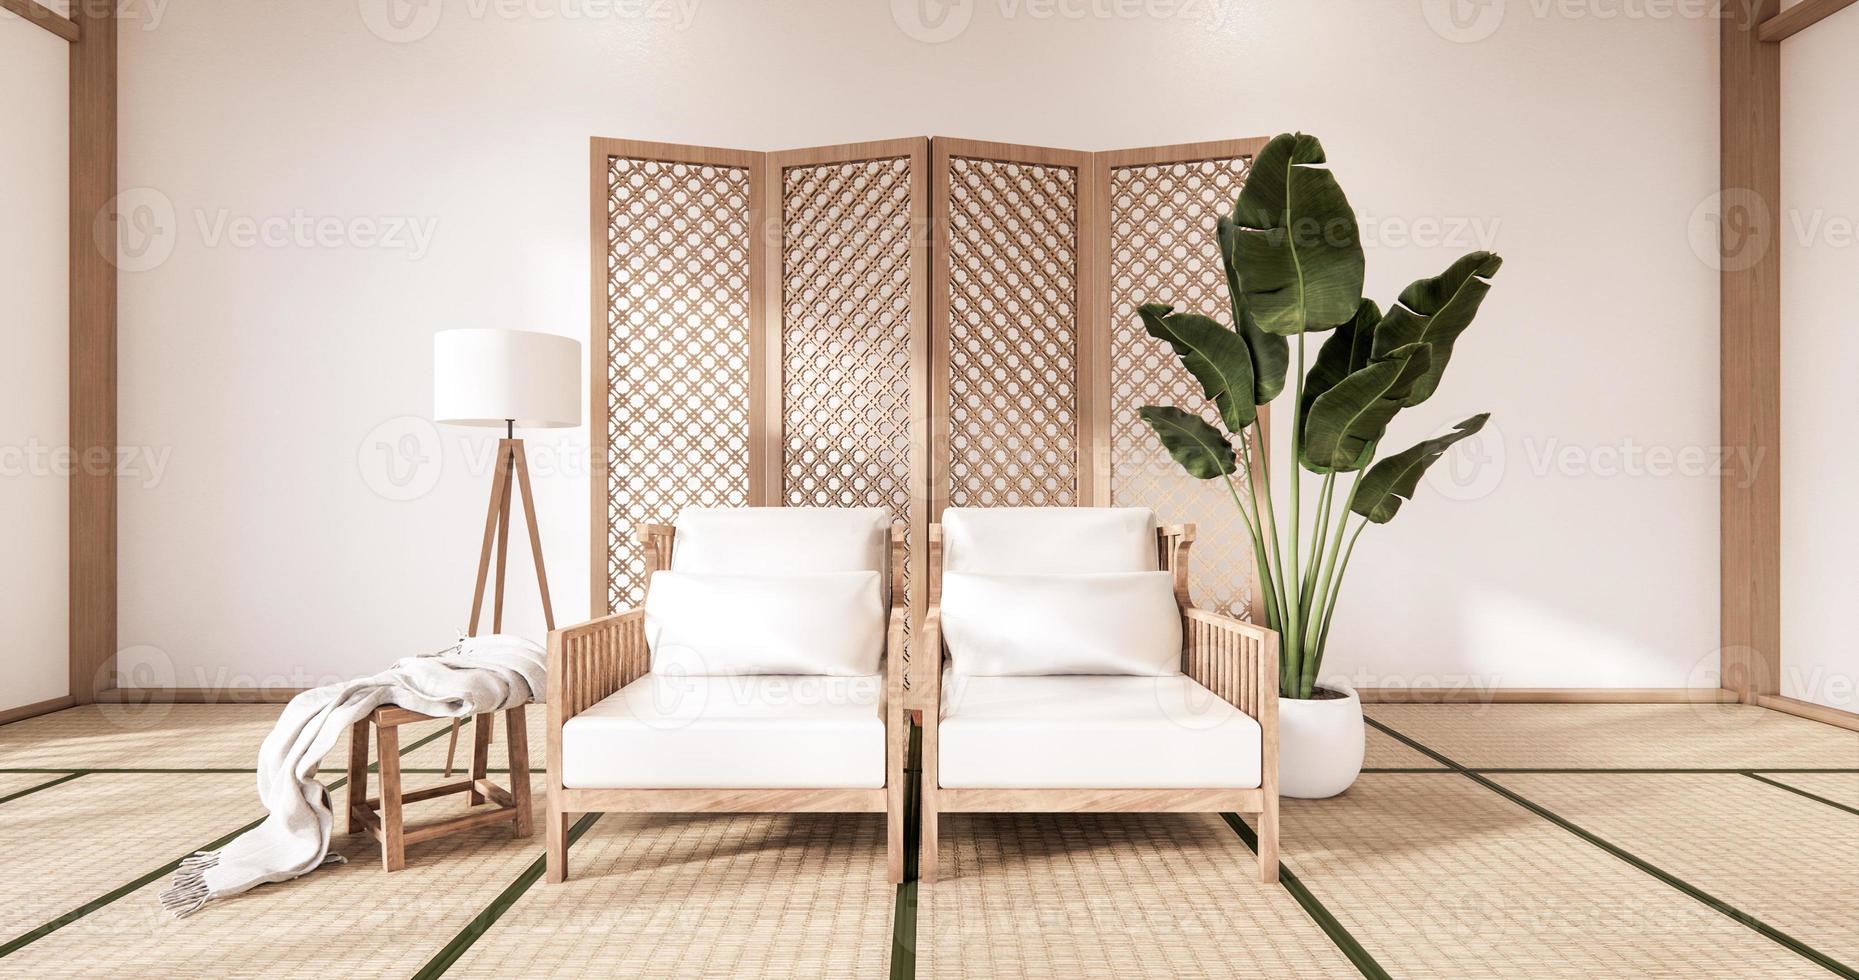 Holzsessel und Trennwand japanisch auf tropischem Interieur des Zimmers mit Tatami-Mattenboden und weißer Wand. 3D-Rendering foto